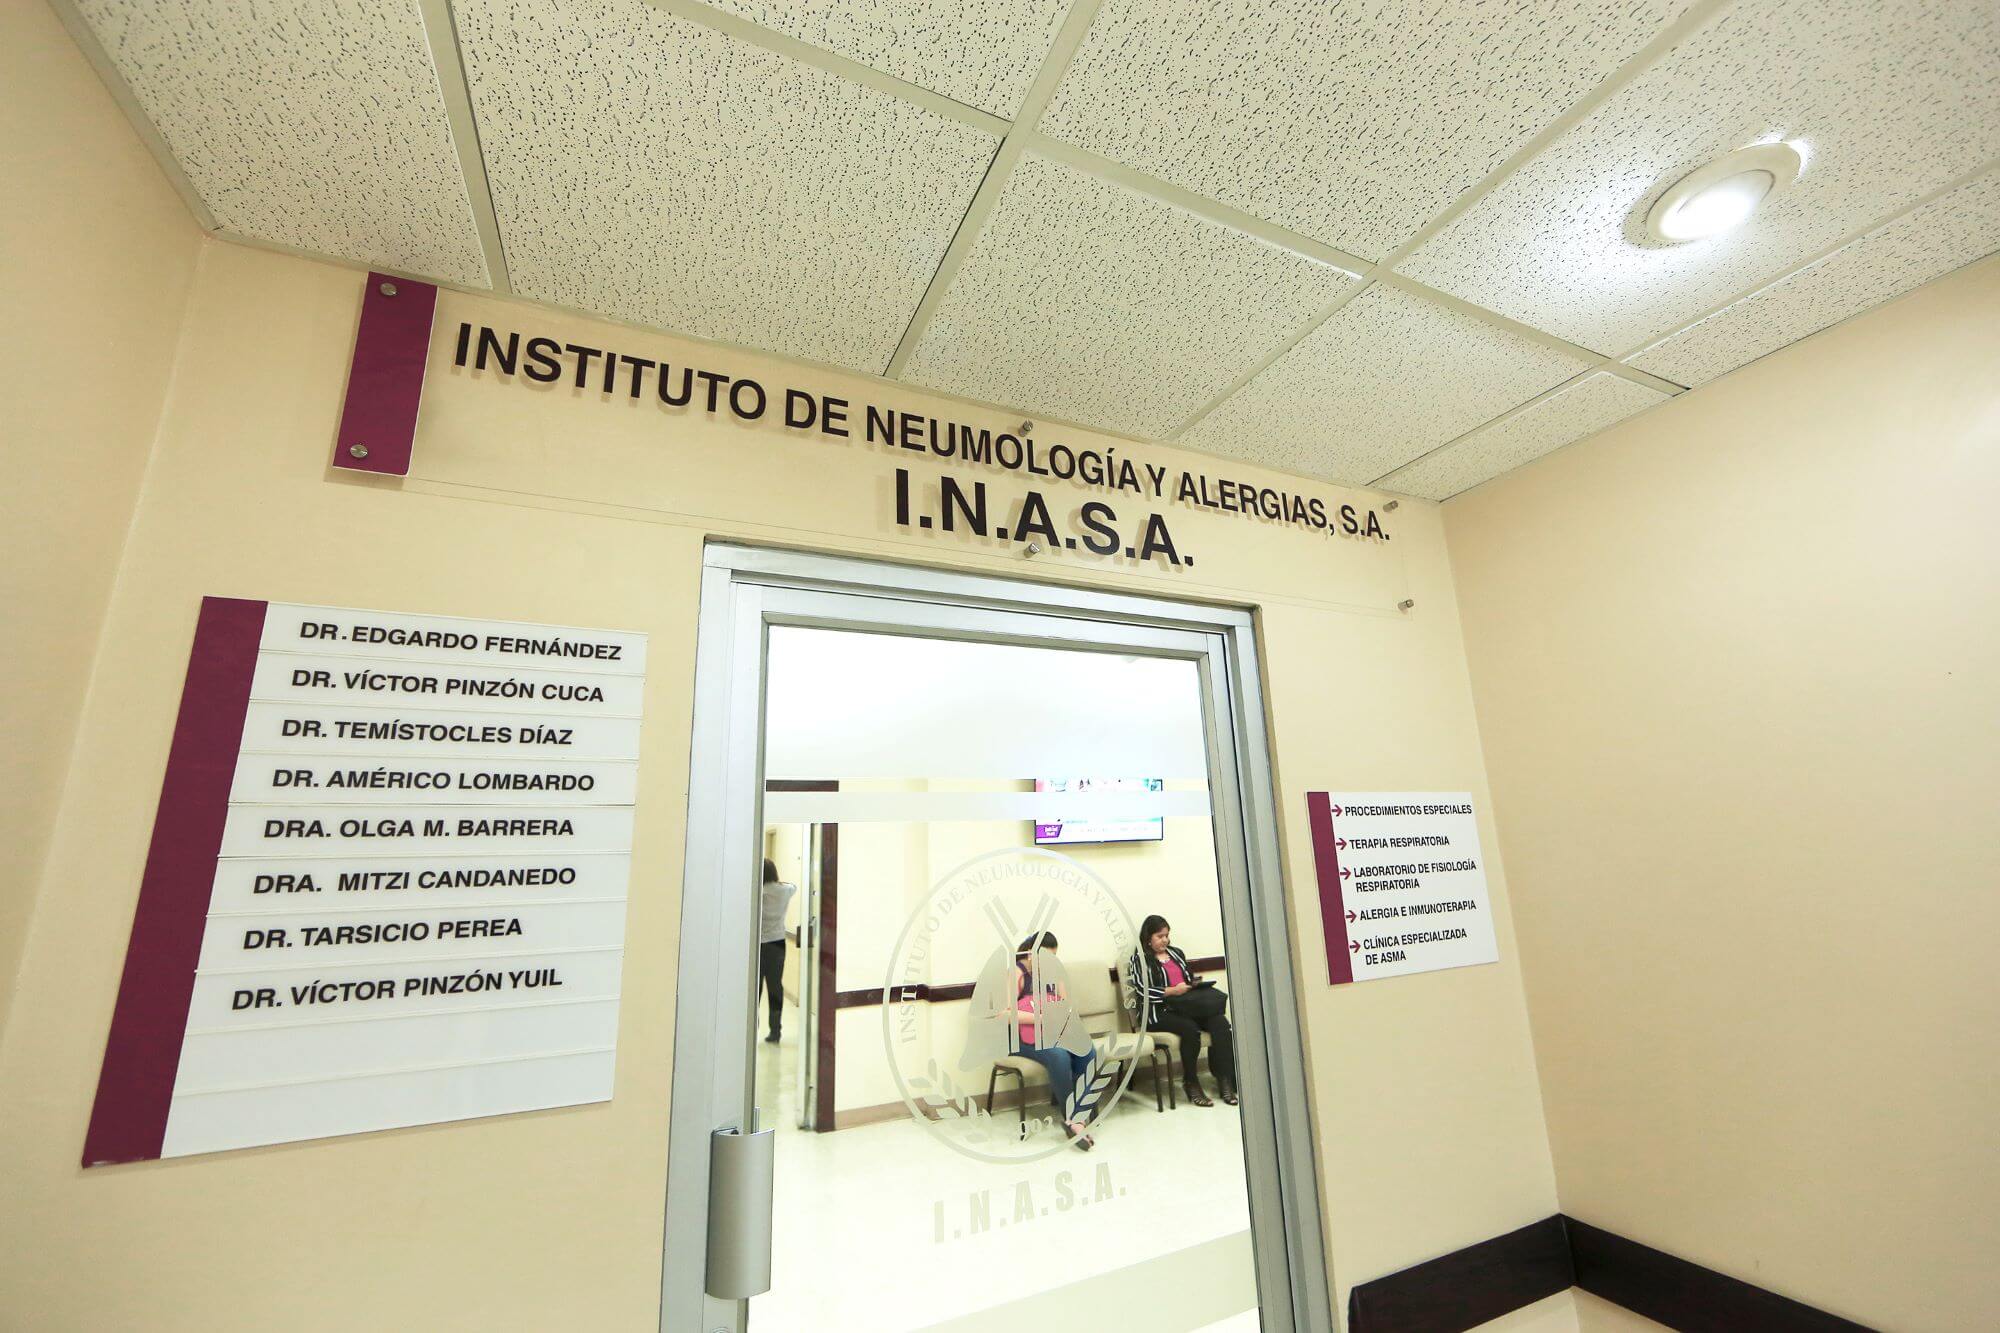 Institute of Pneumonology